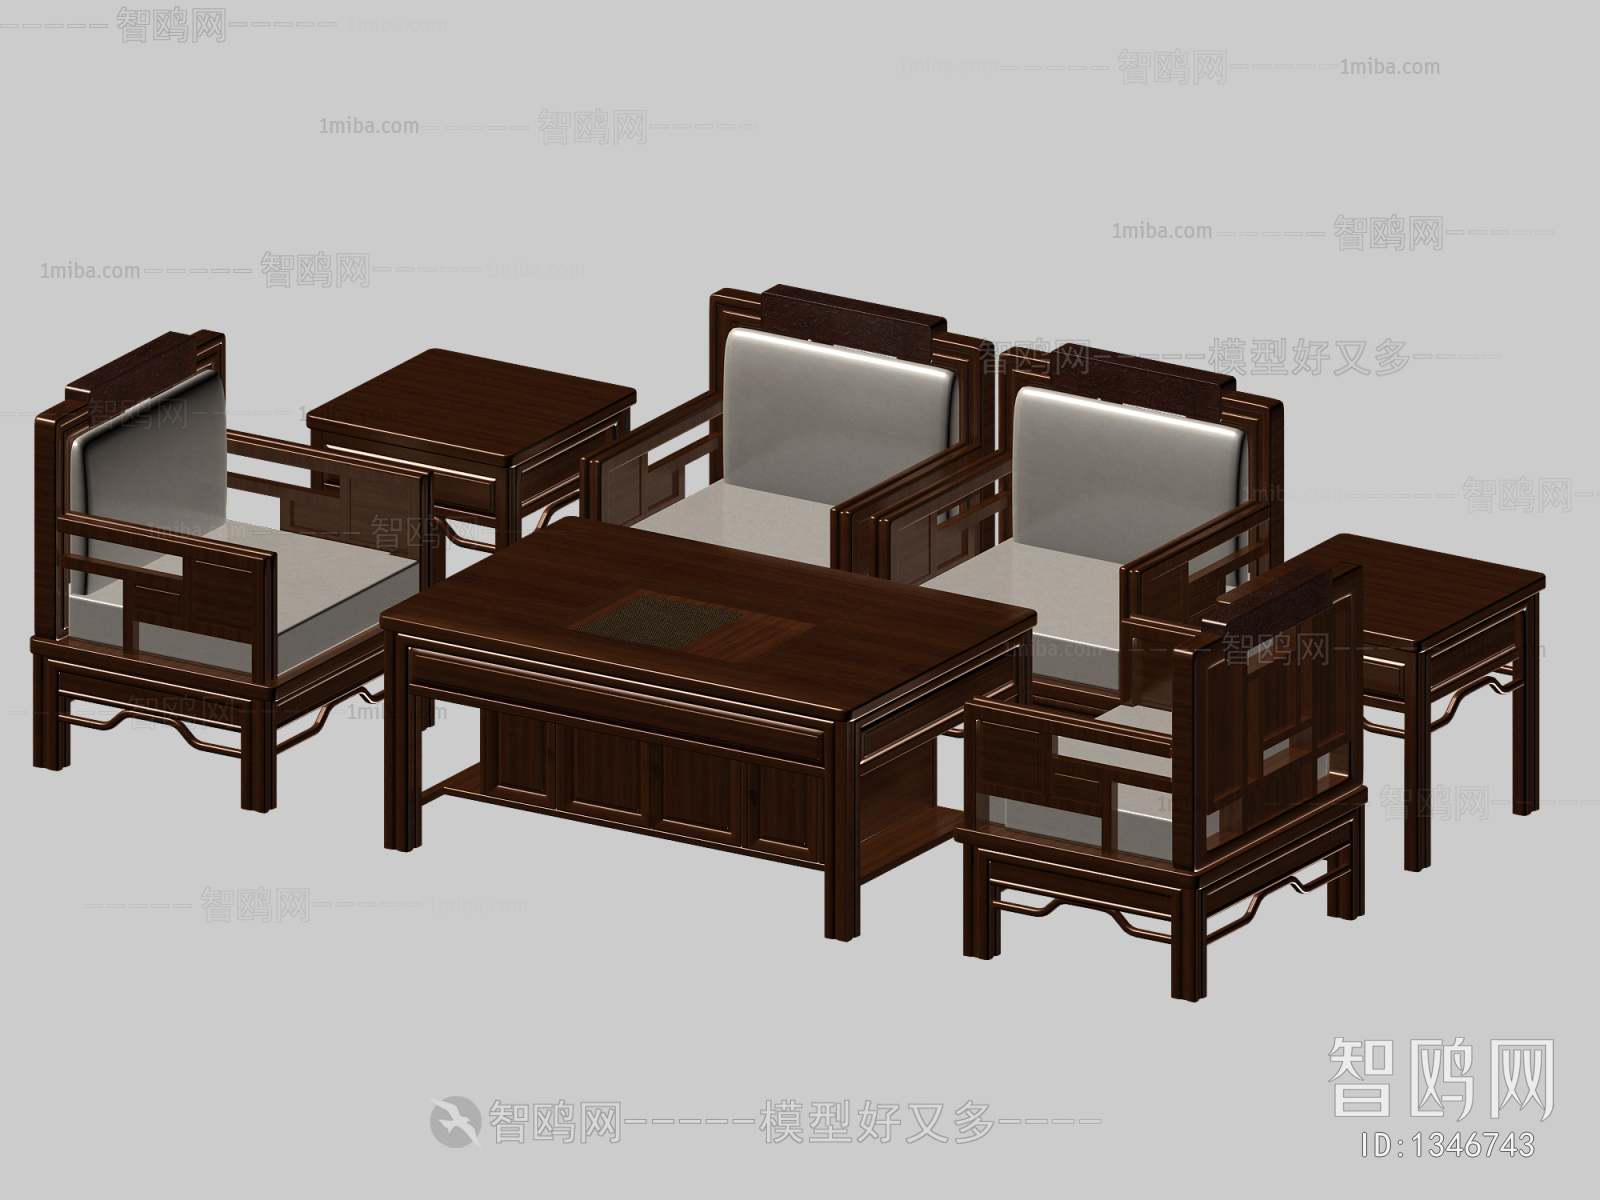 Chinese Style Single Sofa